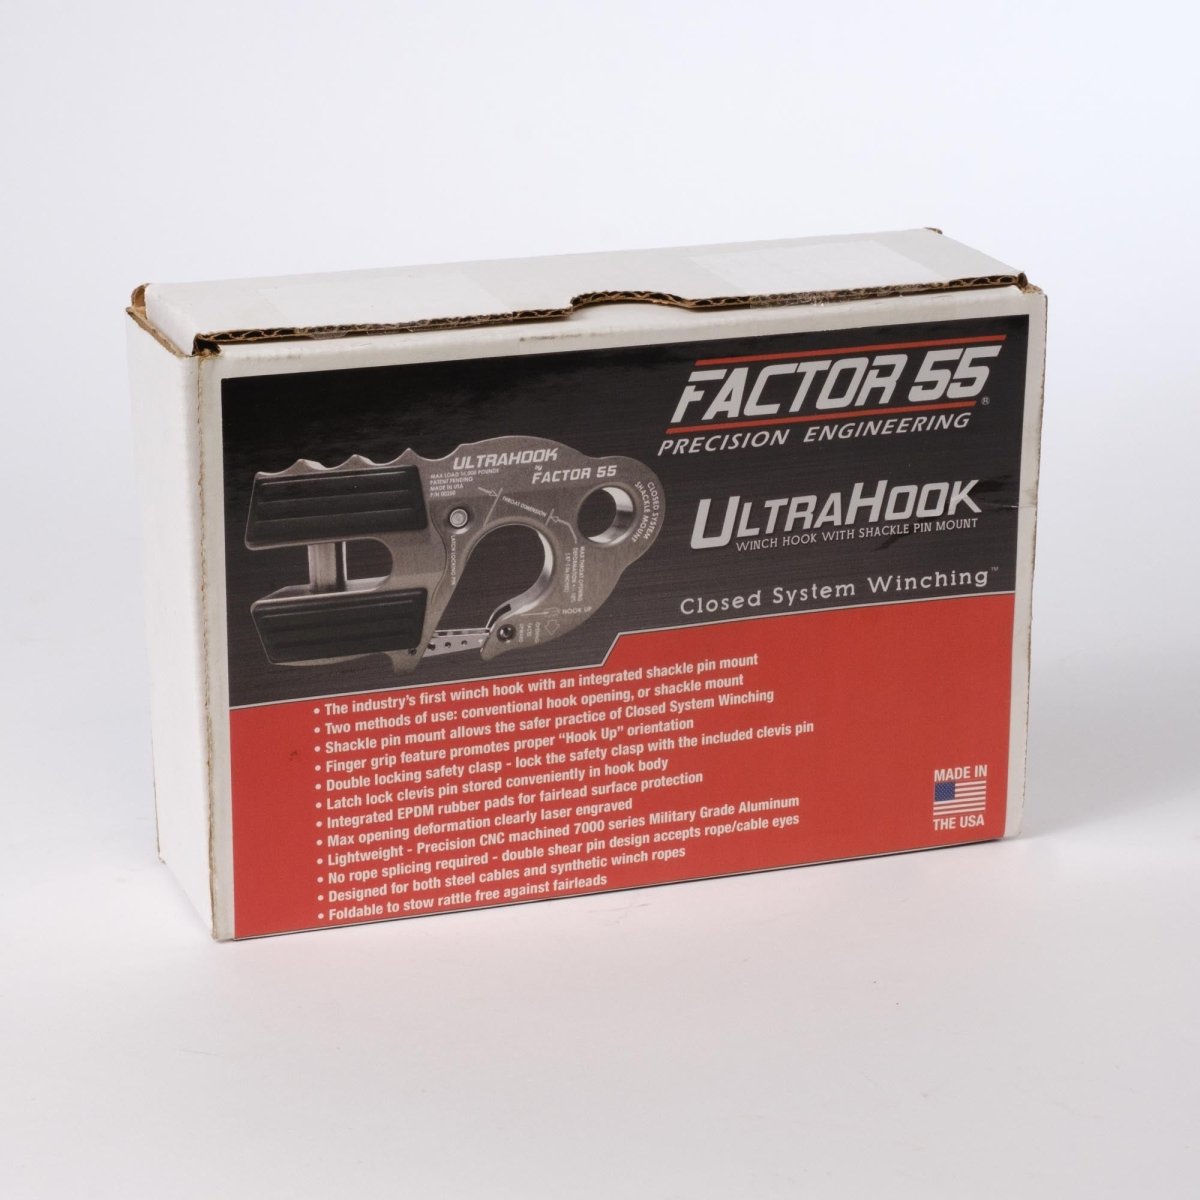 Factor 55 UltraHook | Factor 55 | A247 Gear